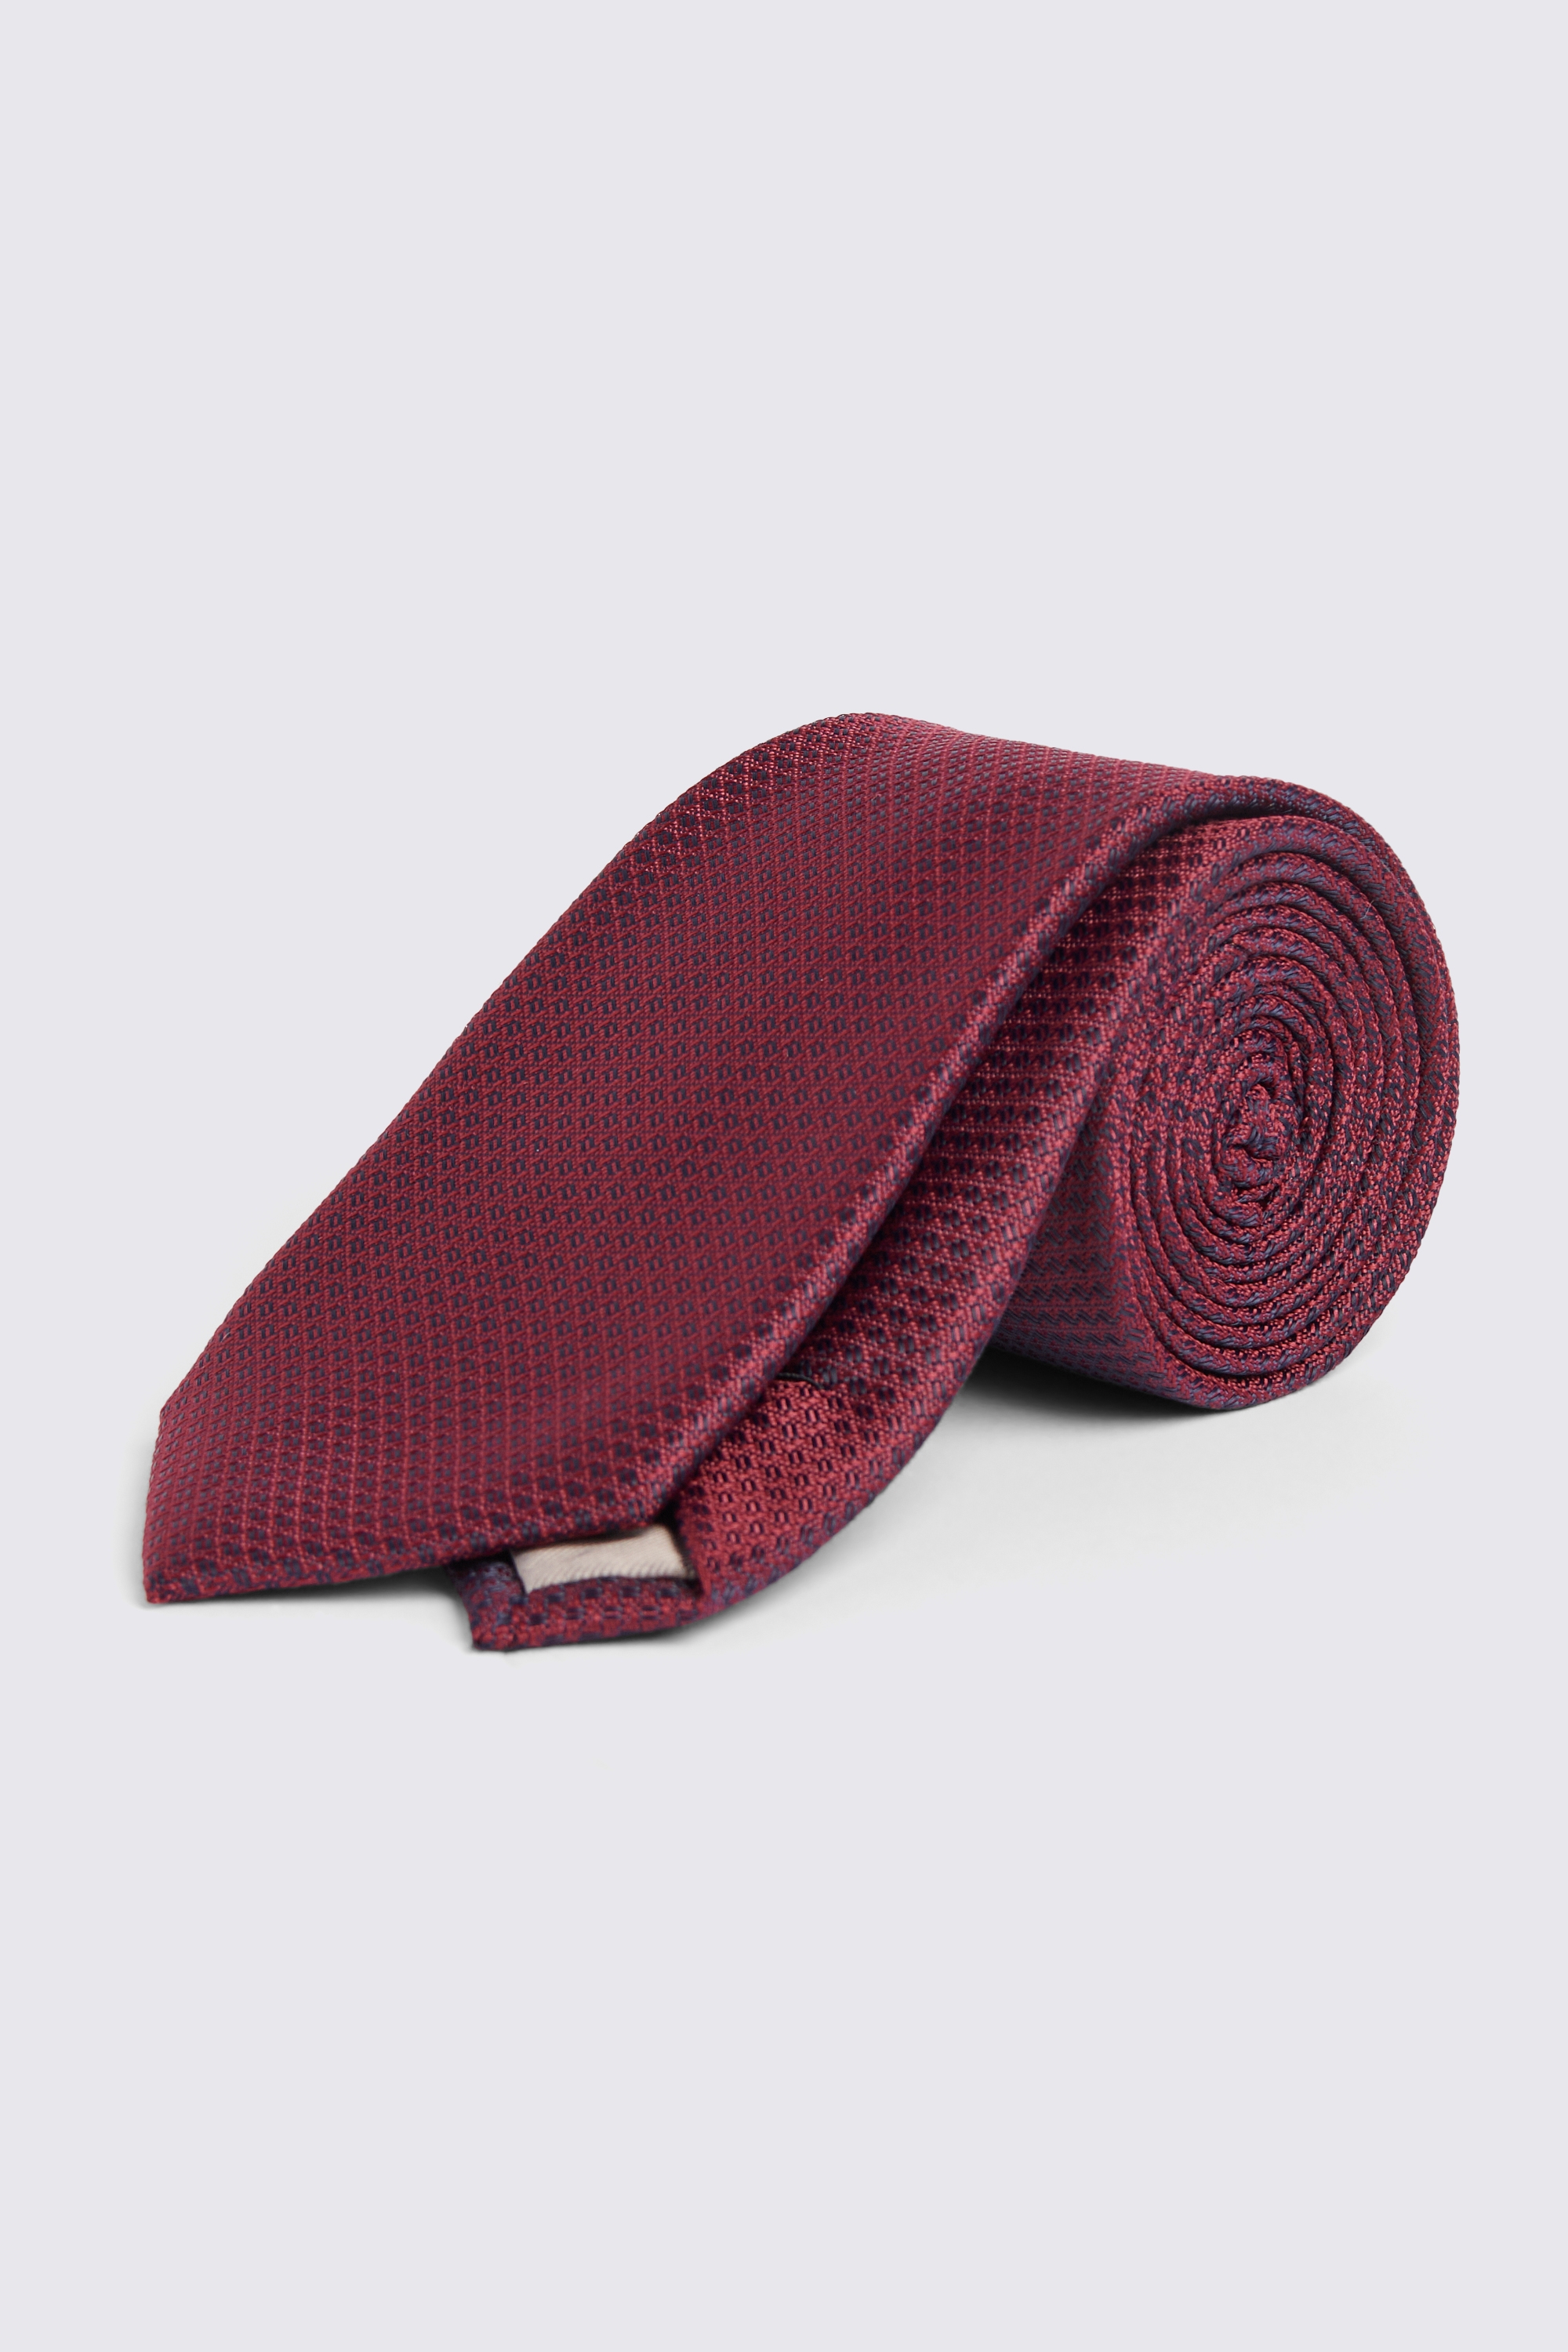 Berry Textured Tie | Buy Online at Moss